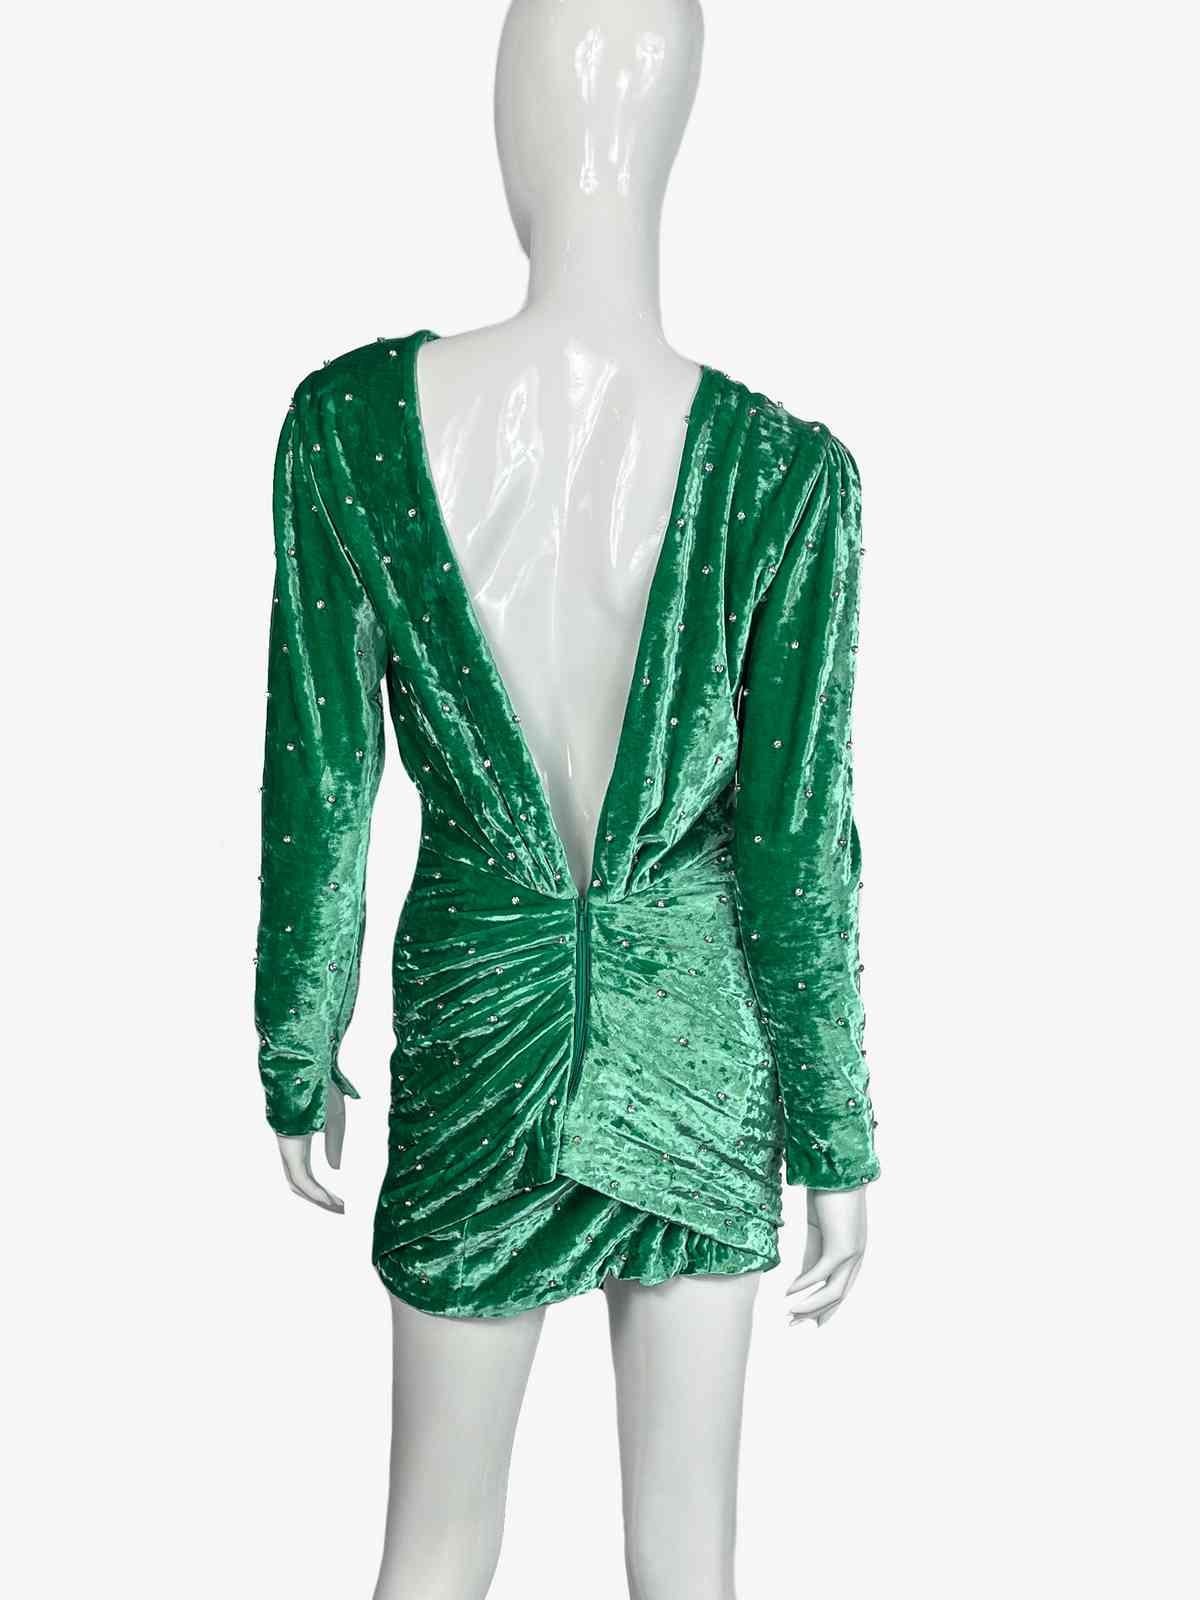 Attico Rhinestone Green Velvet Dress, 2020 For Sale 1